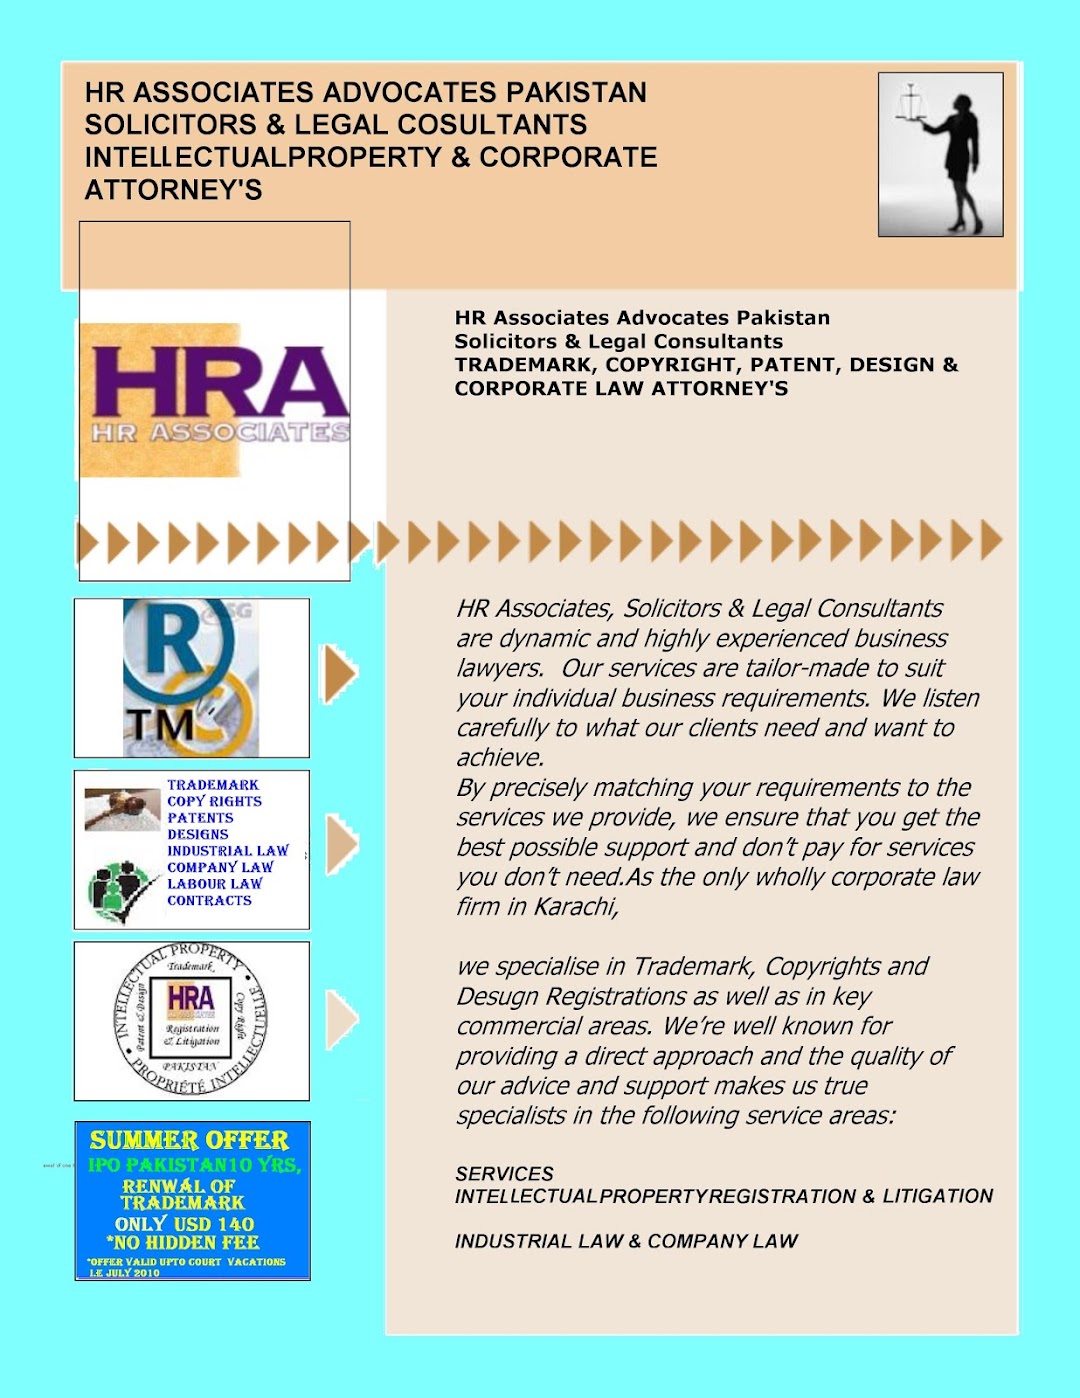 HR Associates Advocates Pakistan - IPR Attorneys